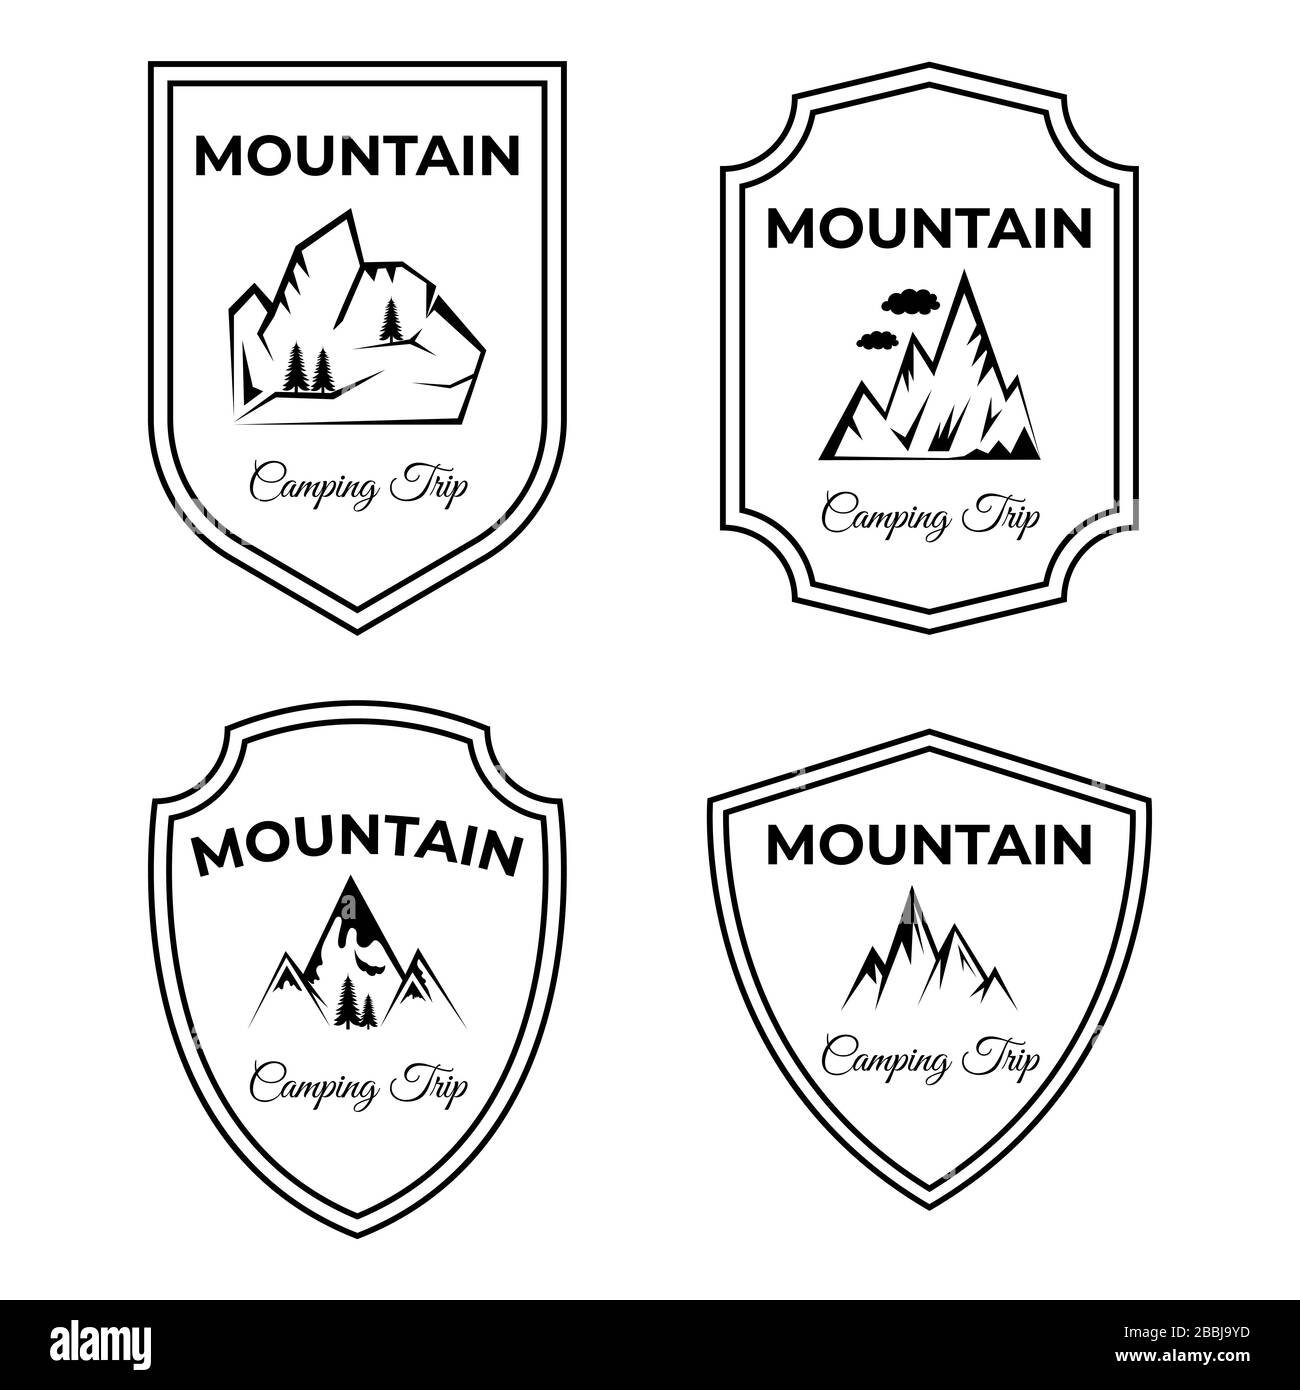 Set aus Berg- und Camping-Trip-Vector-Logo-Designs. Spitzen von Mounts mit Textbereich. Aktiver Lebensstil, Wandern, Klettern, Leben in der Natur, Reisen in alpen Ikonen isoliert auf weißem Hintergrund. Stock Vektor